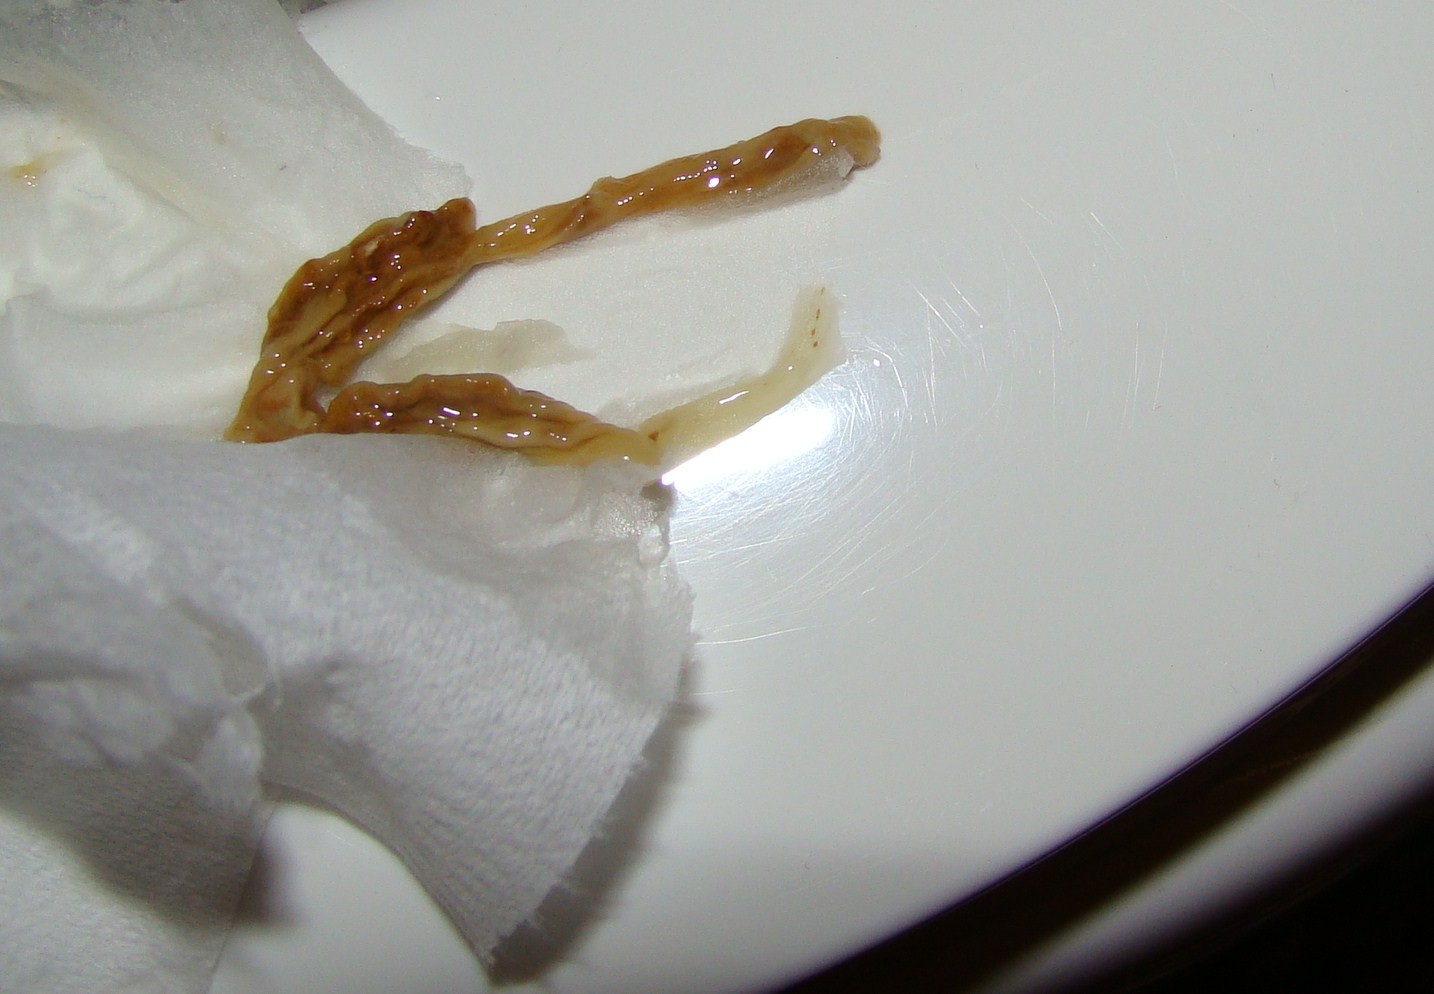 Worms Poop Human